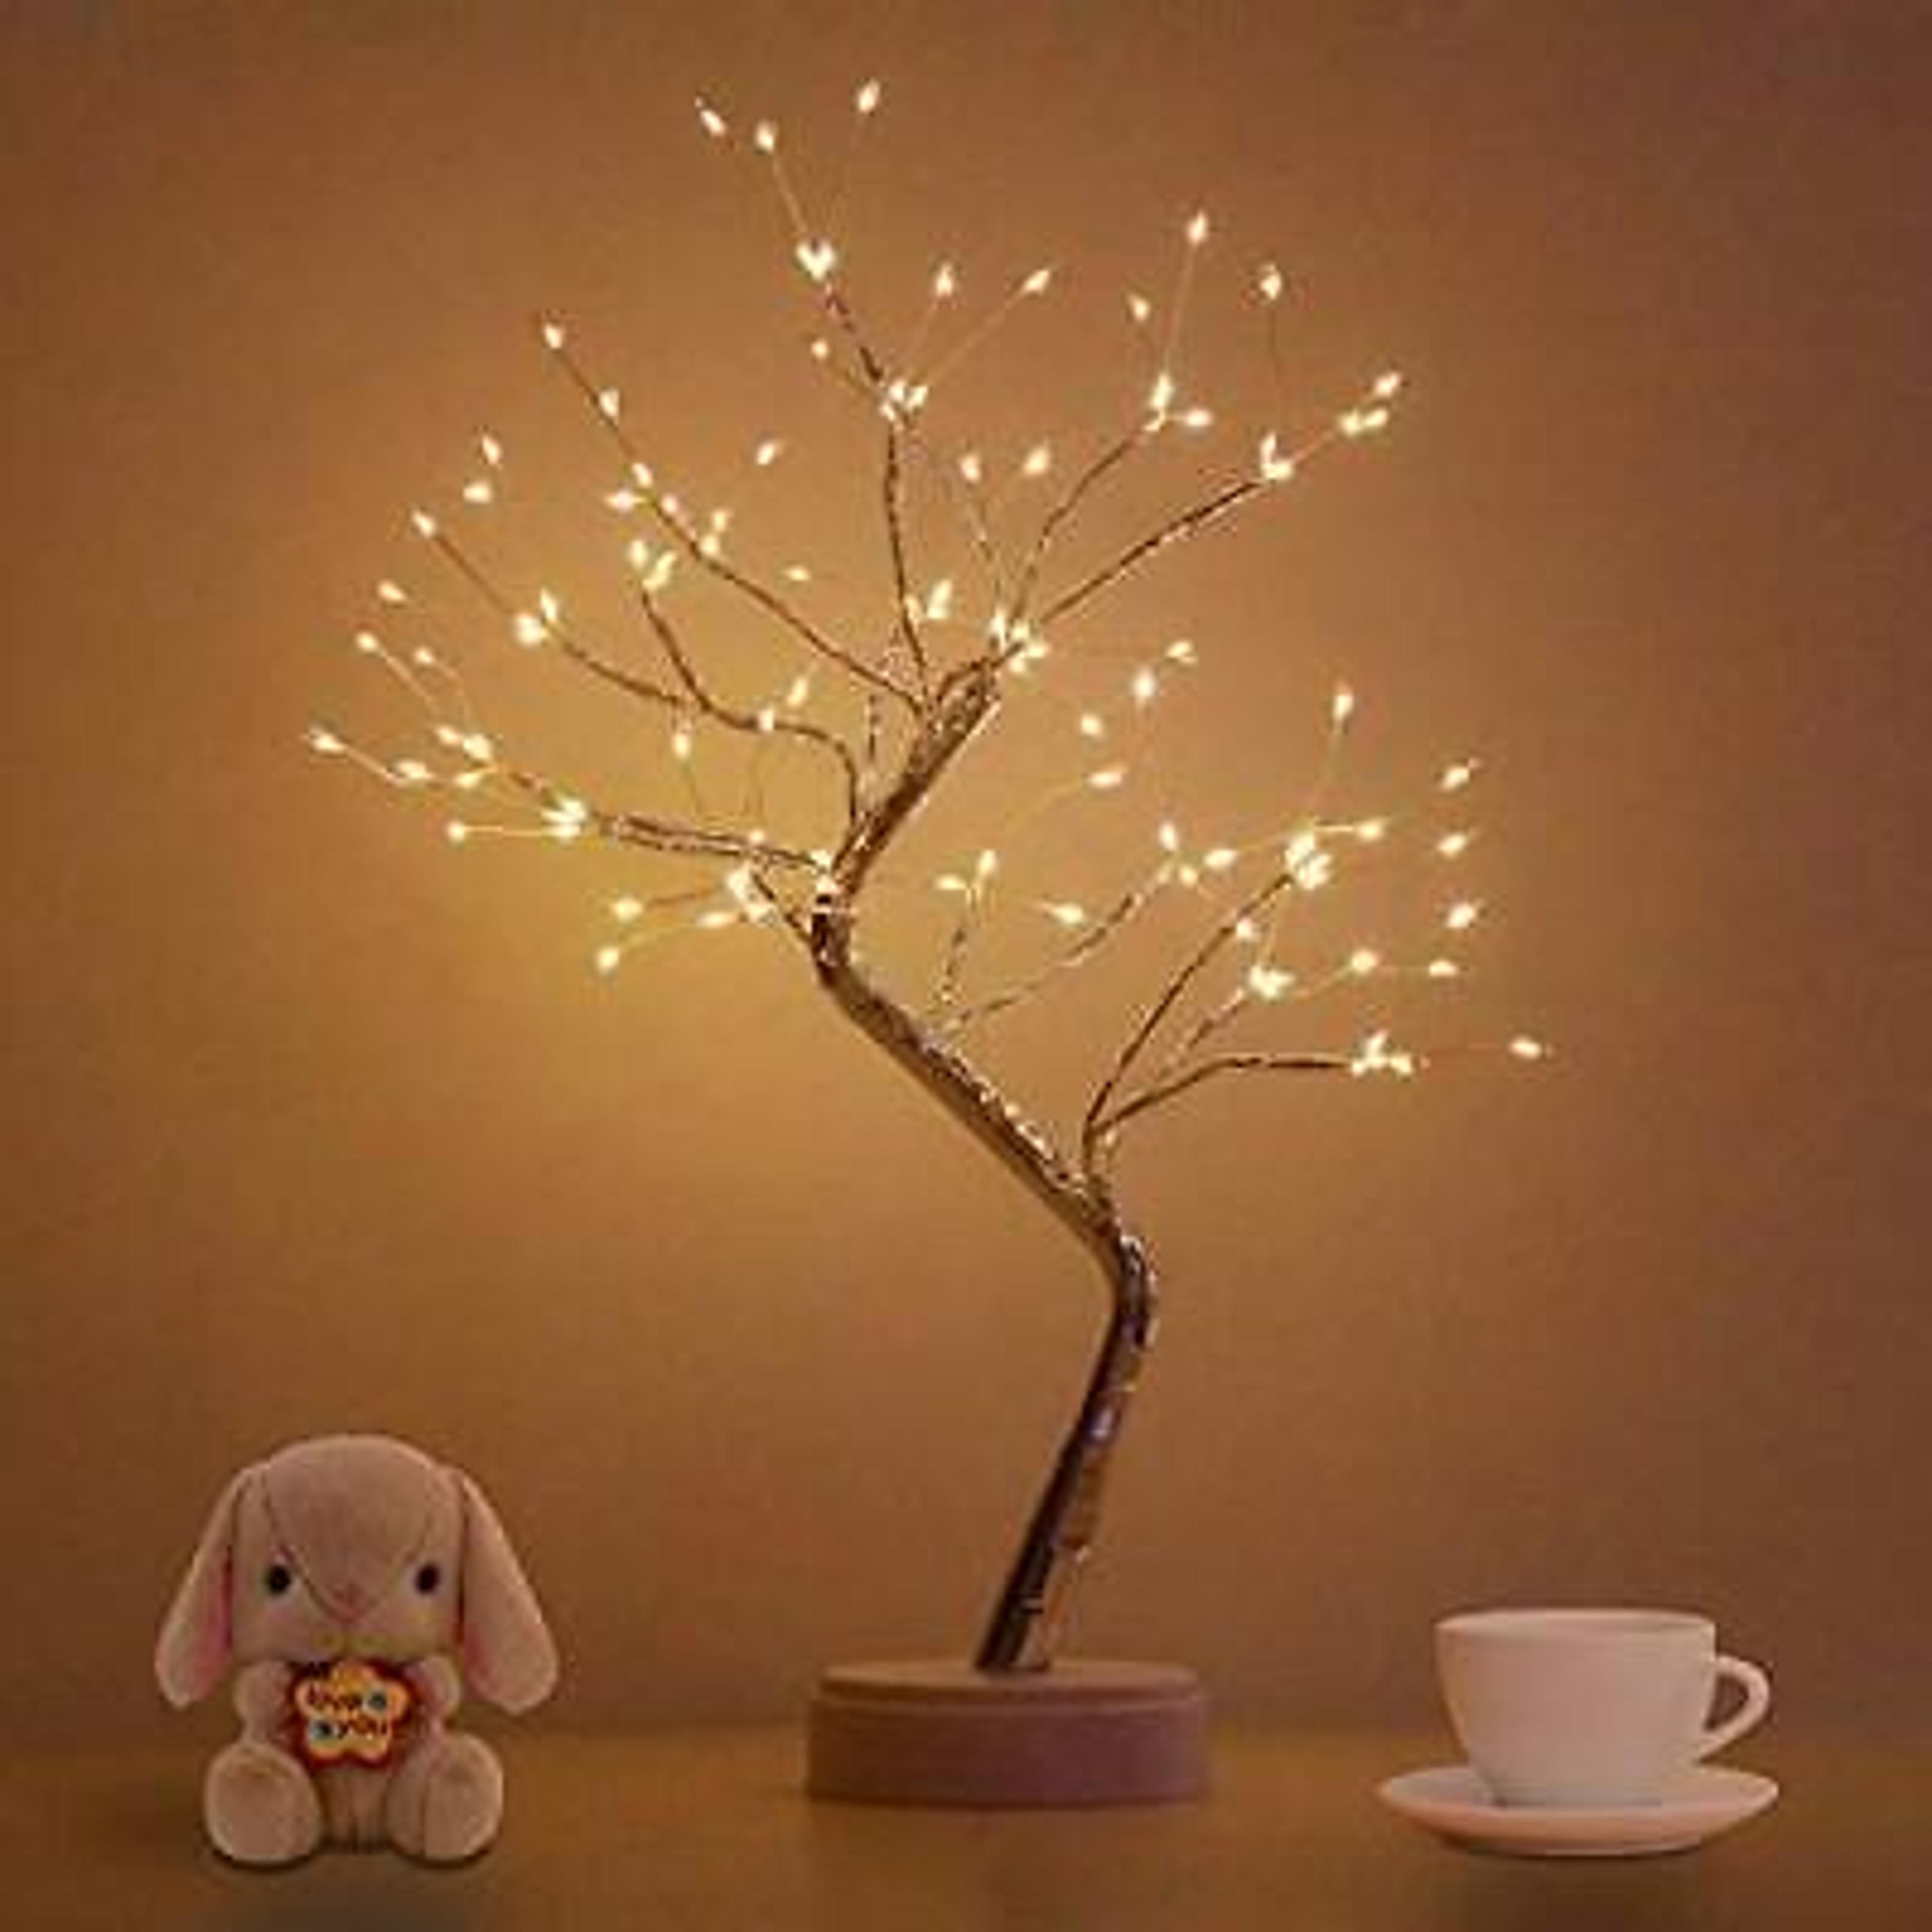 Bonsai Tree Light for Room Decor Aesthetic Lamps for Living Room Cute Night L... 606829952966 | eBay